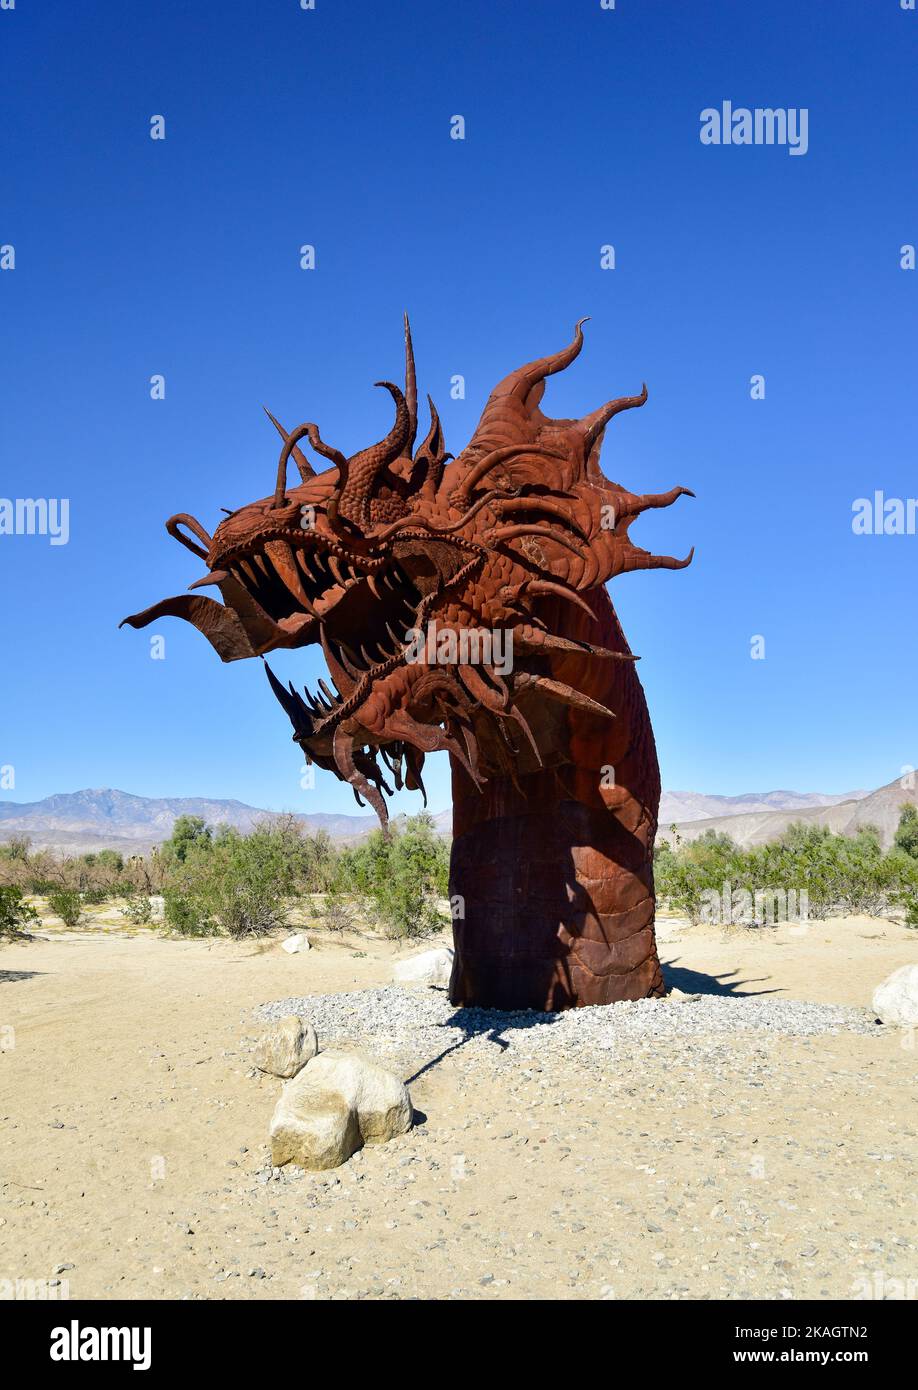 Galleta Meadows Sky Art Sculptures in Borrego Springs, California Stock Photo